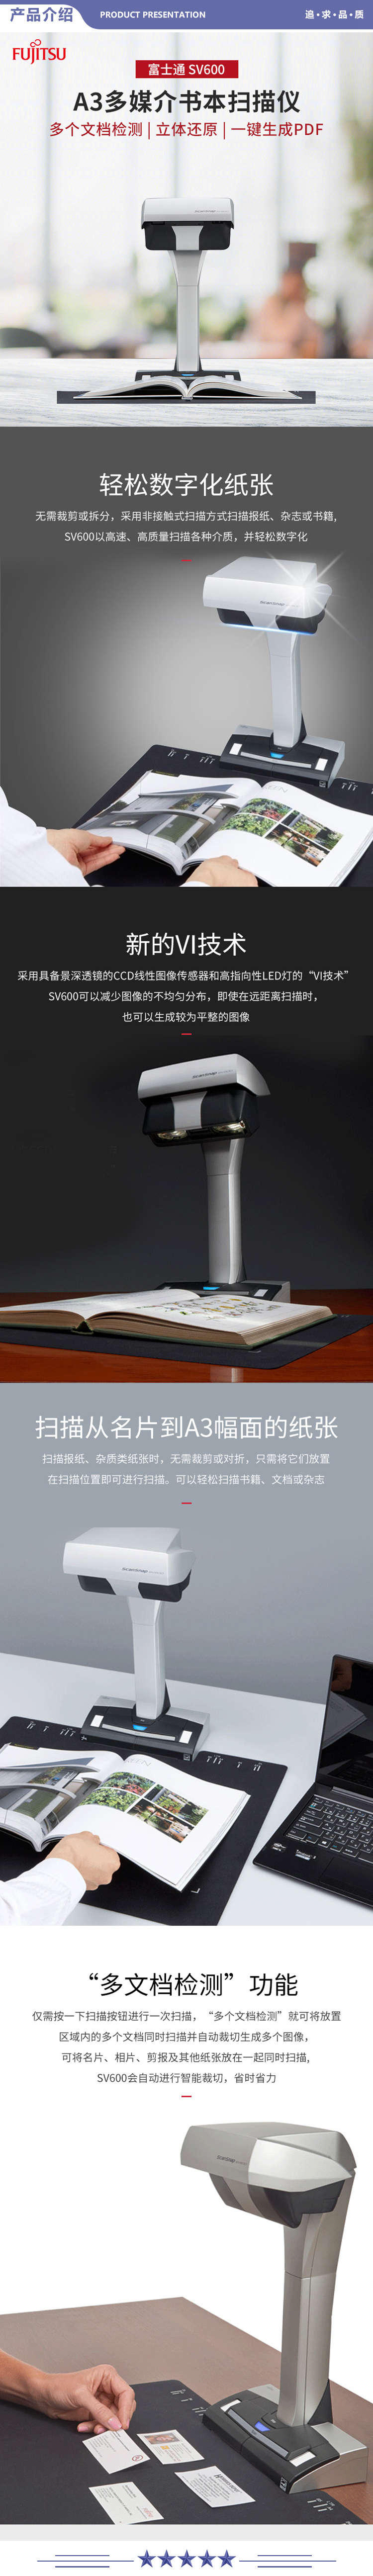 富士通 FI-7160 扫描仪高拍仪 高清高速 照片文档 办公商务扫描仪 2.jpg